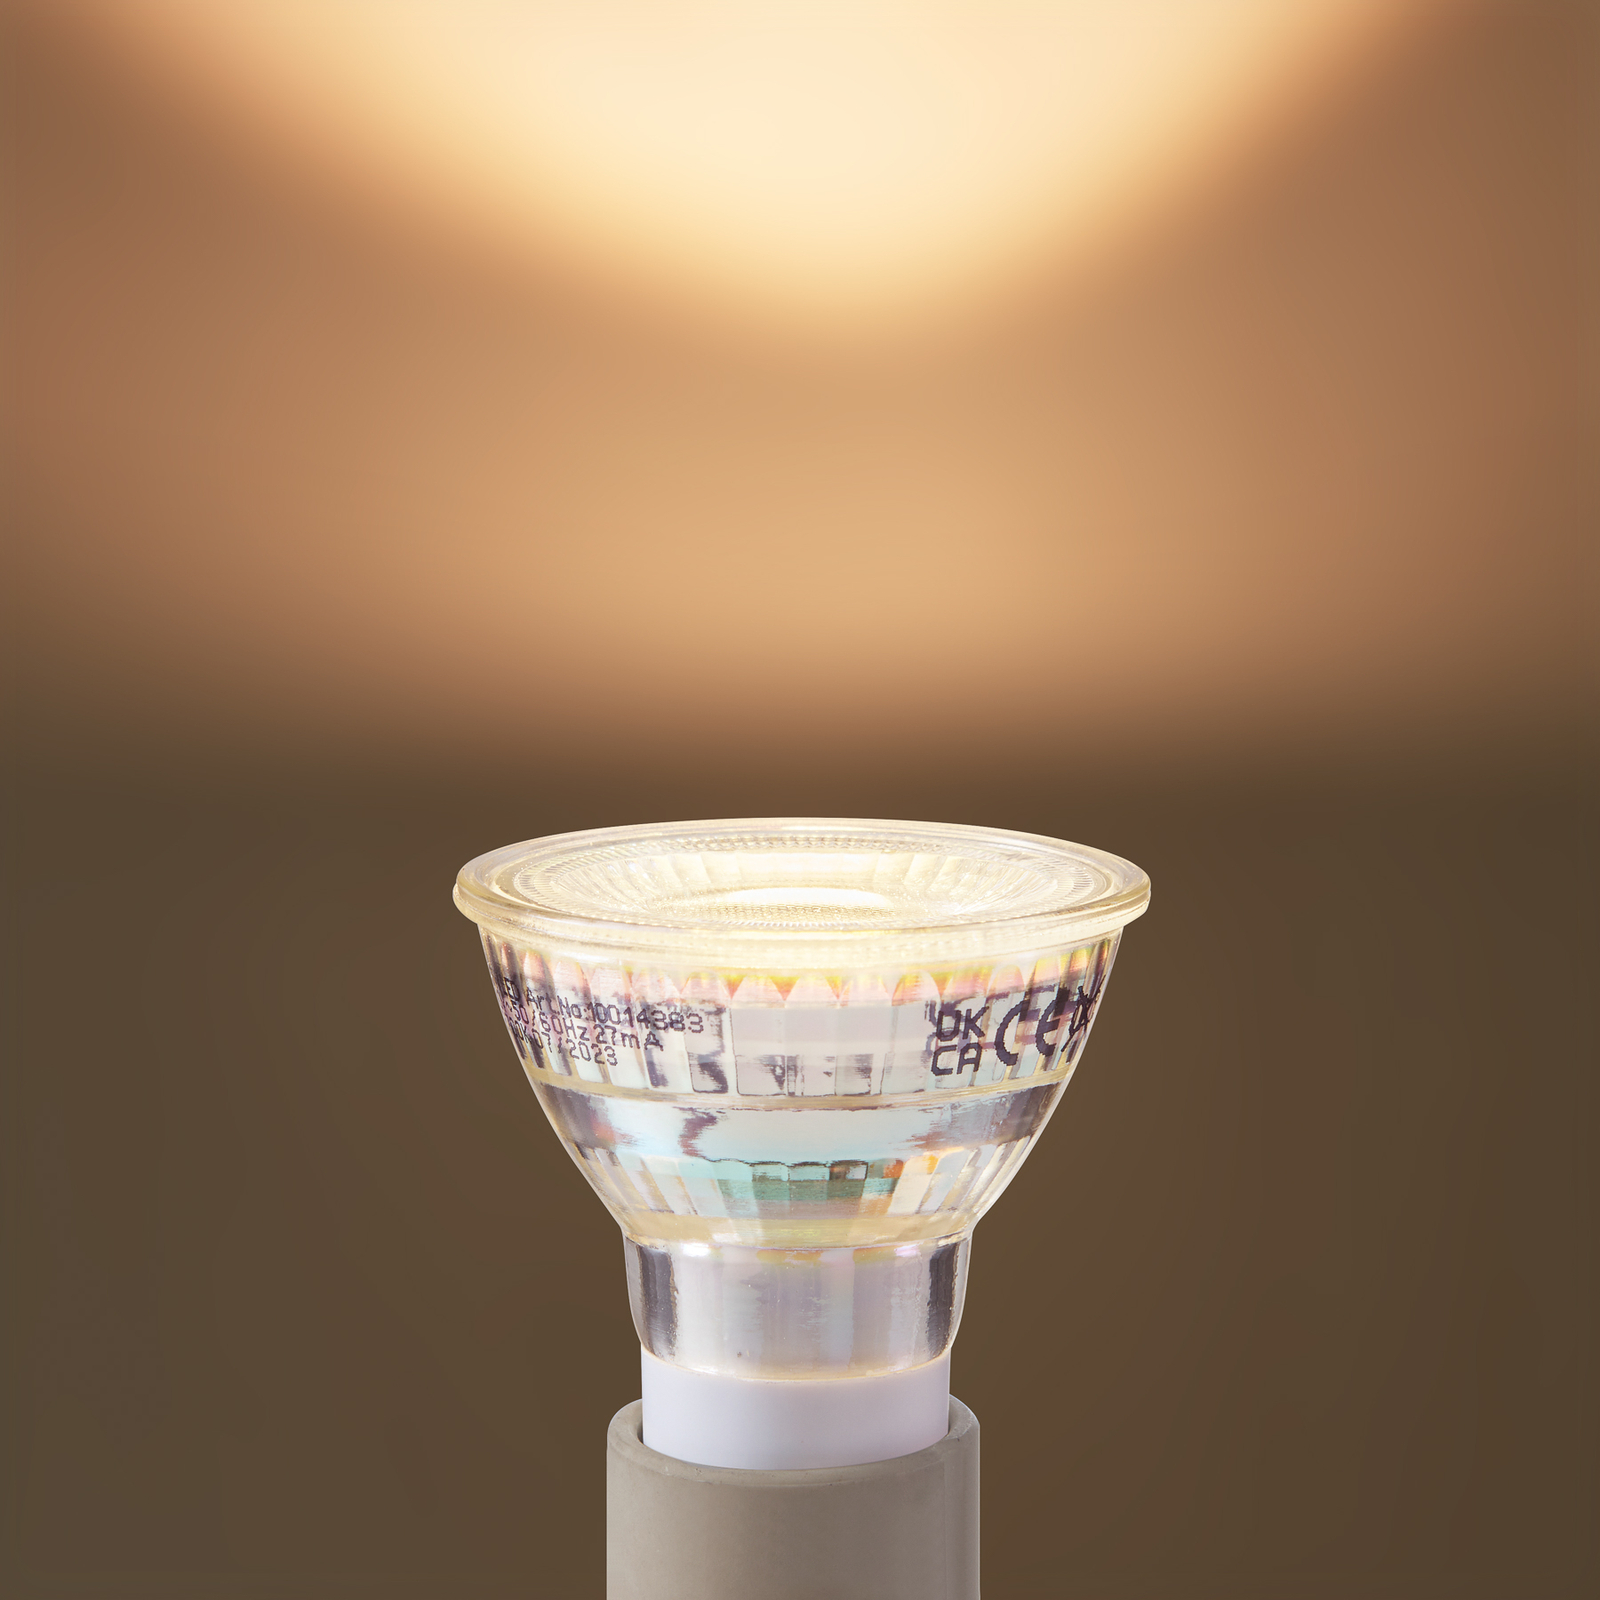 Arcchio ampoules LED GU10 4,7W 2700K 850lm verre set de 10 pièces